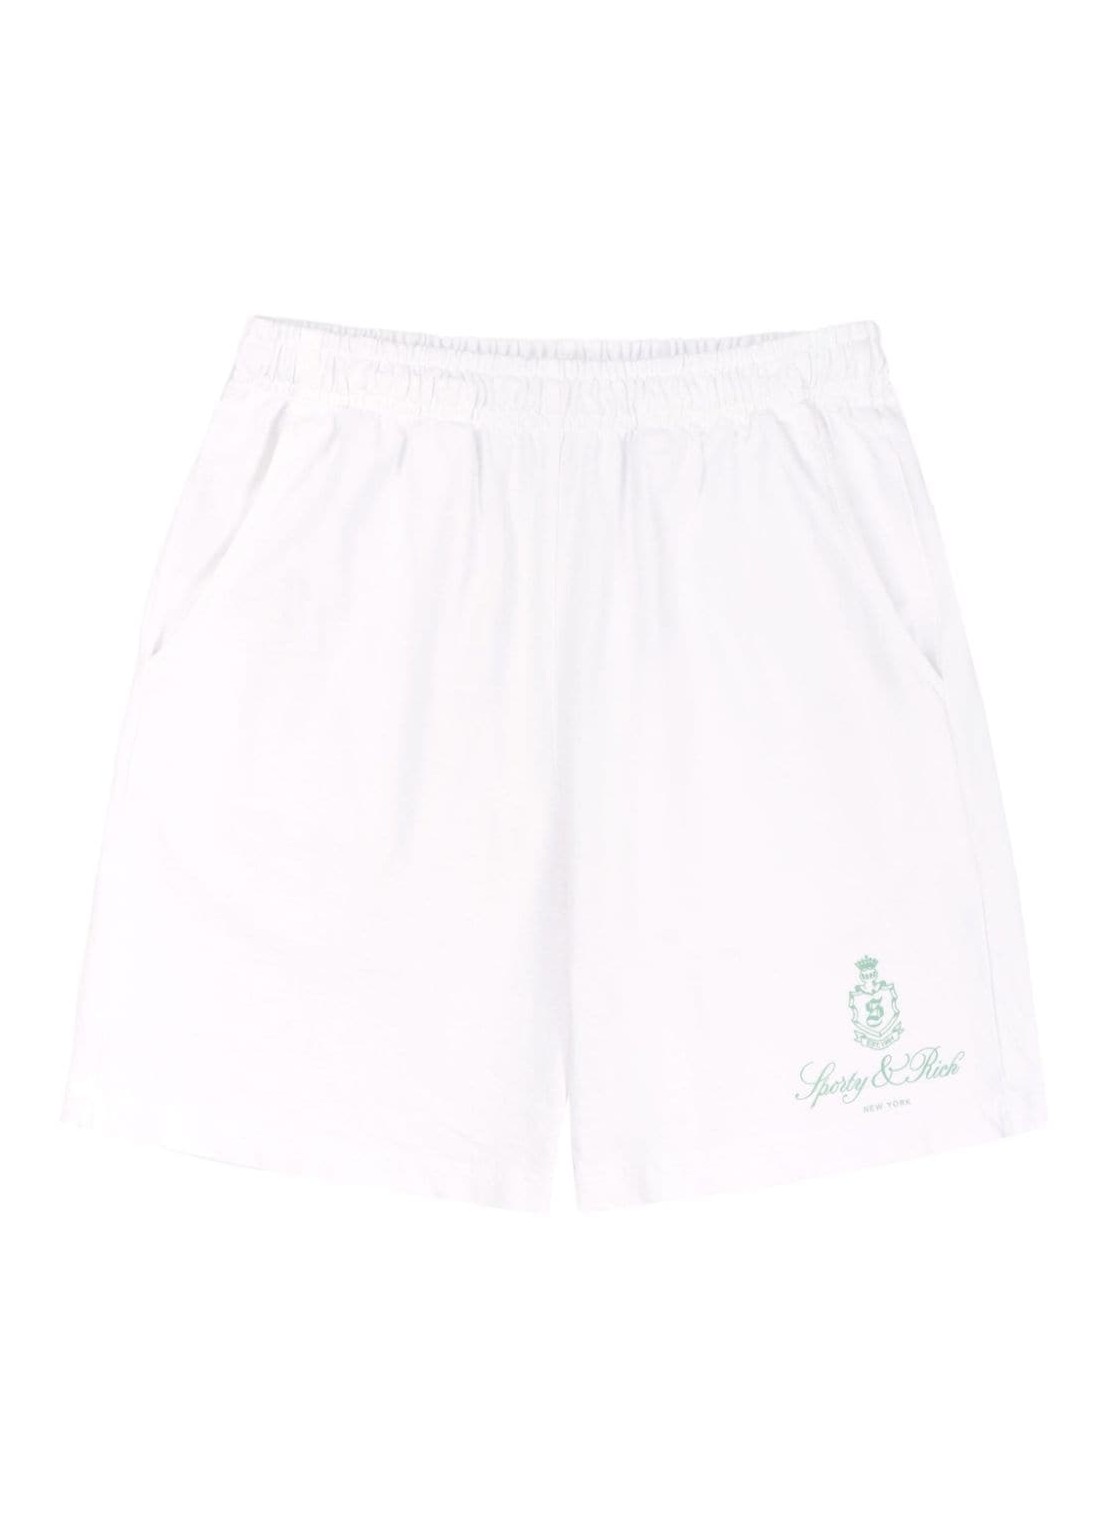 Pantalon corto sporty & rich short pant womanvendome gym shorts white/sage - sh021s412vw white talla